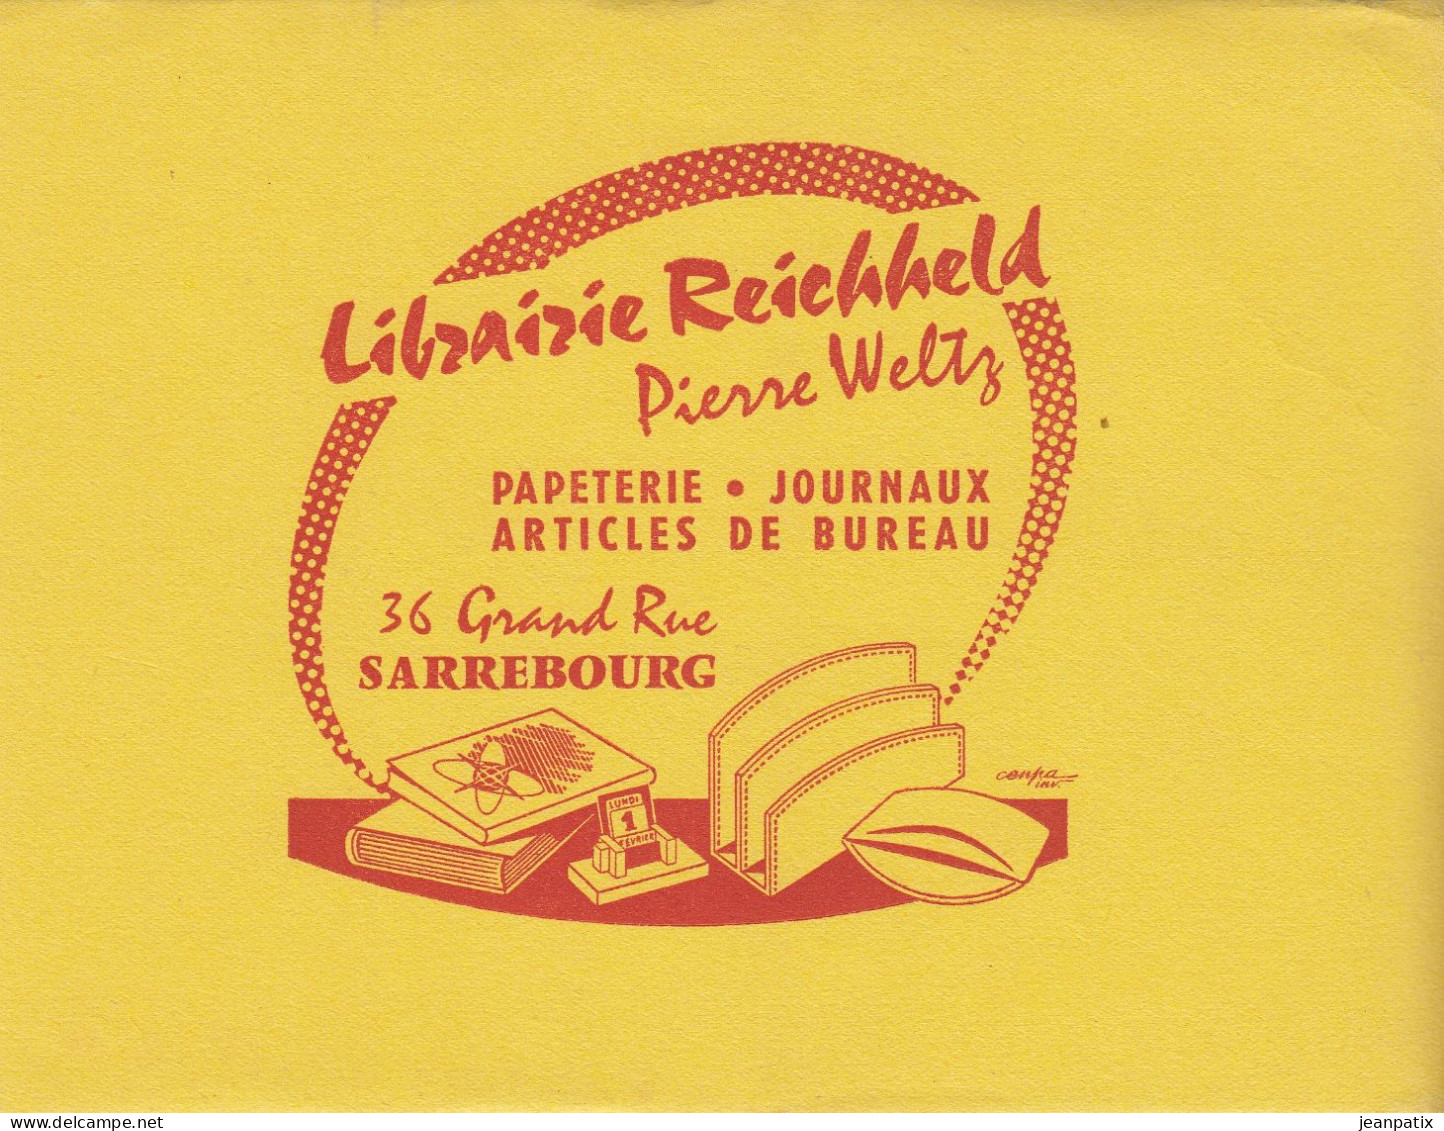 BUVARD & BLOTTER - Librairie REICHHELD - Pierre Weltz - SARREBOURG (Moselle) - Chocolat